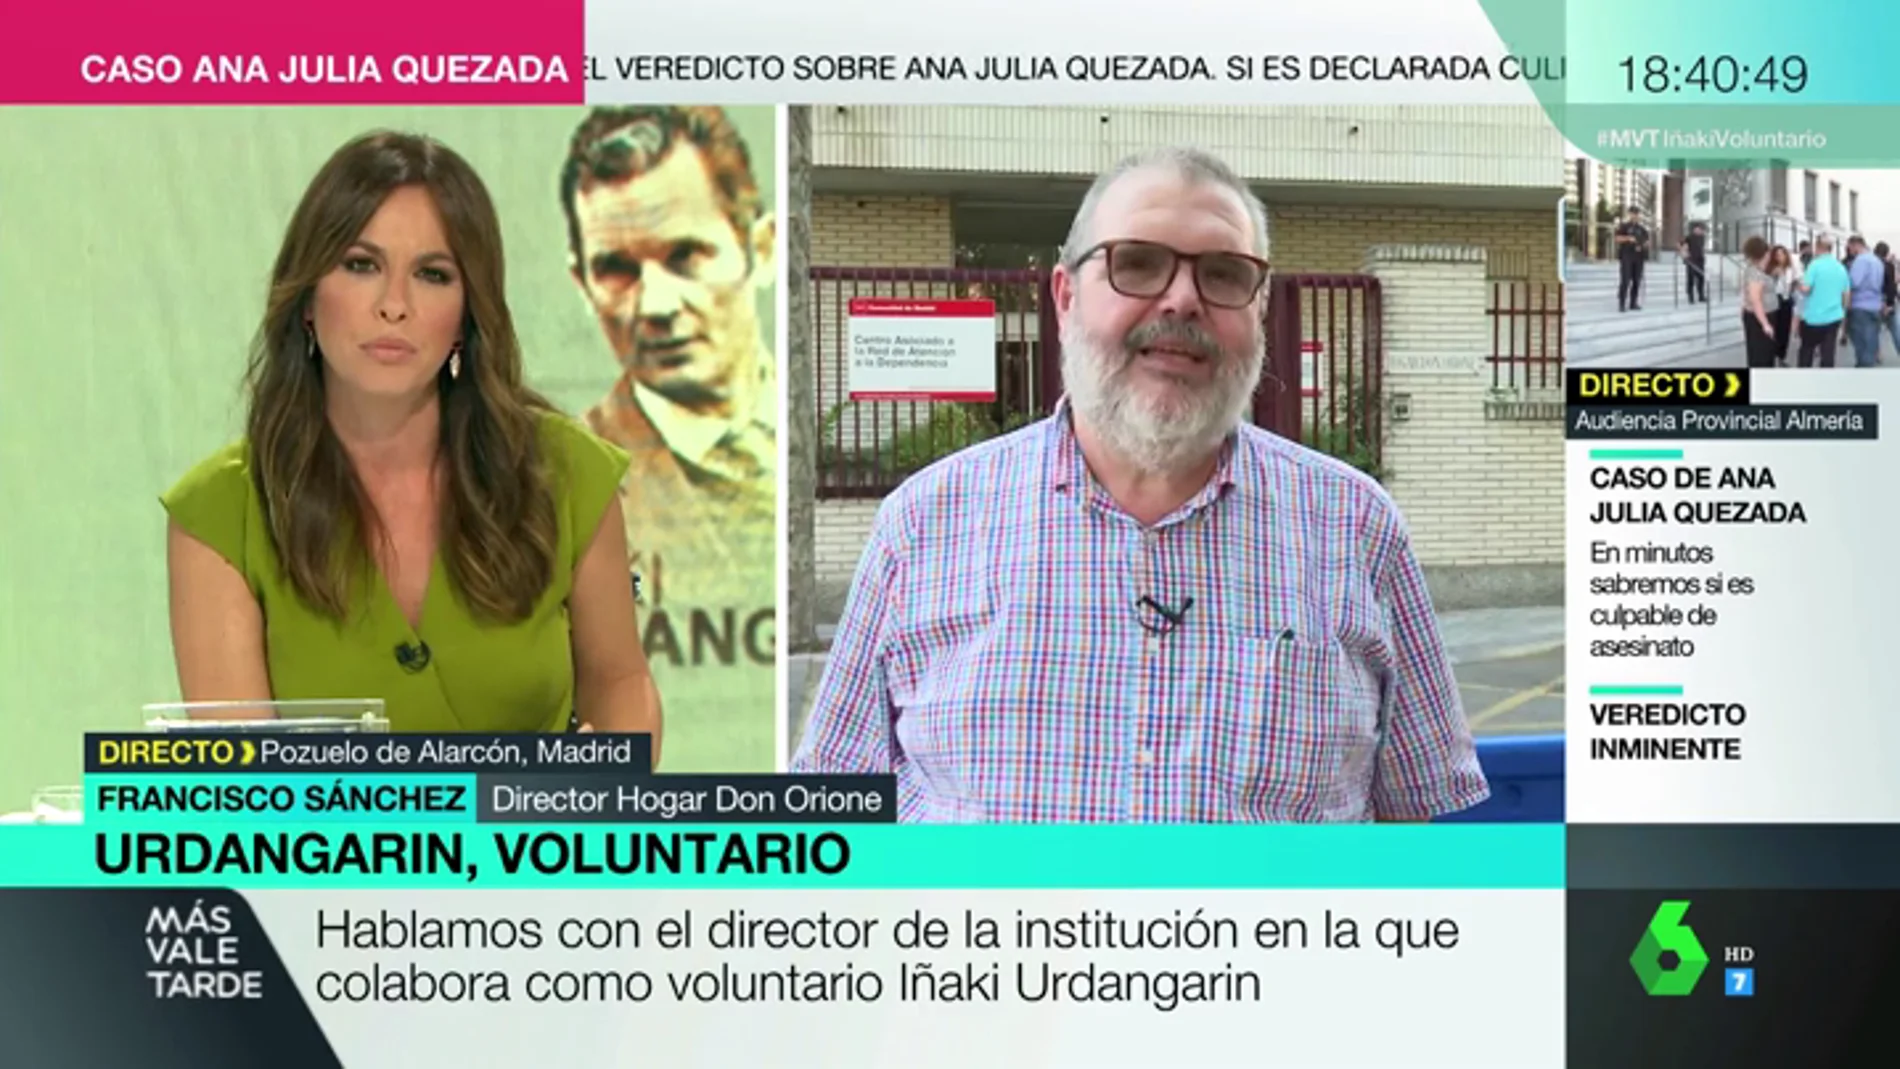 Francisco Sánchez, director del centro de voluntariado de Urdangarín: "Ha comentado que la prisión pesa"